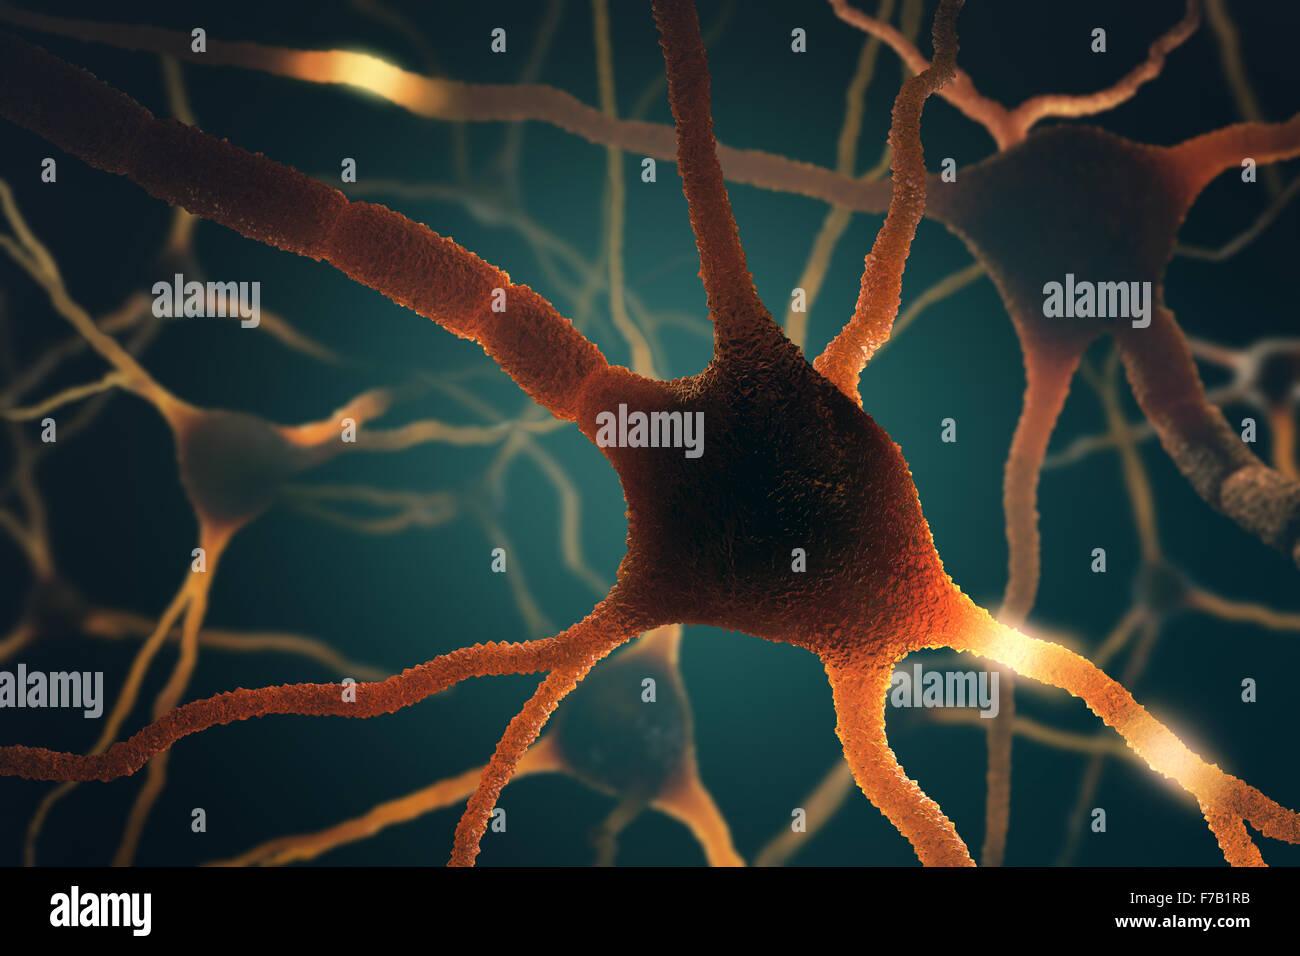 Bild-Konzept von Neuronen in einem komplexen Gehirn-Netzwerk miteinander verbunden. Stockfoto